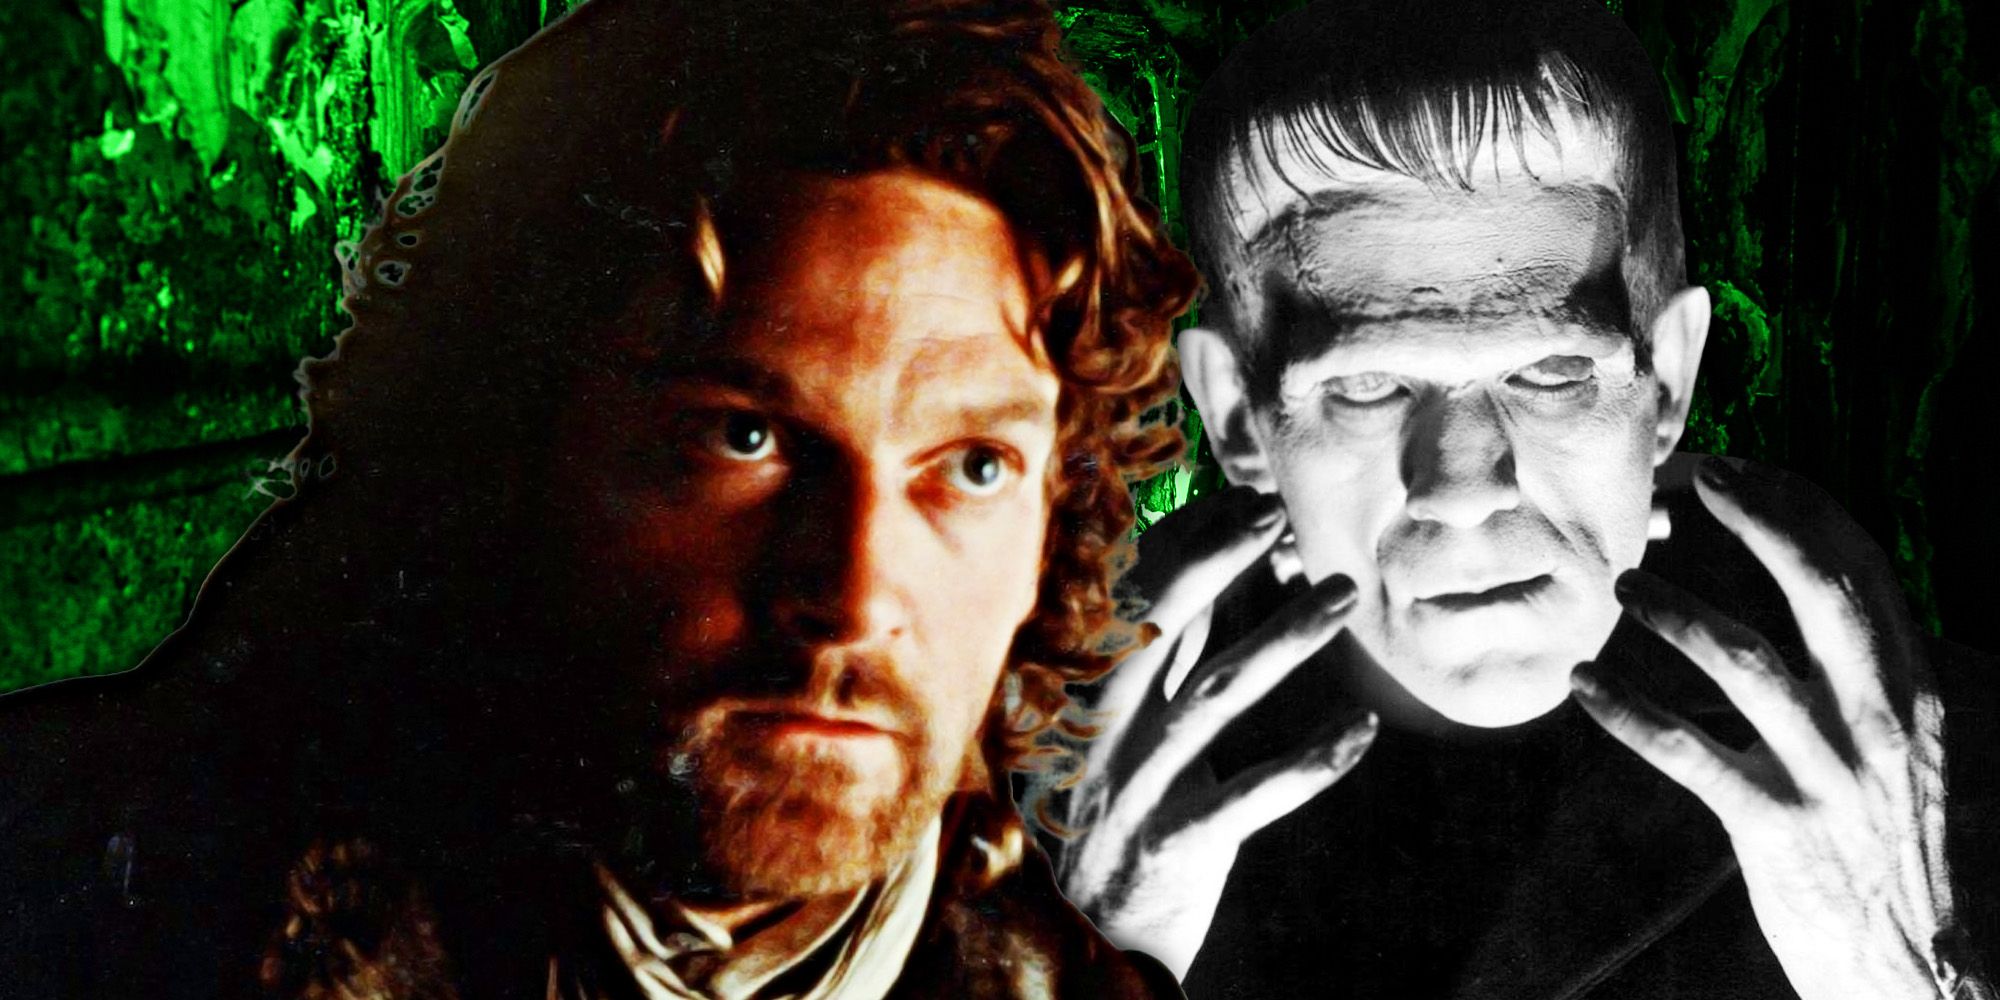 Kenneth Branagh's Victor Frankenstein and Boris Karloff's Frankenstein monster